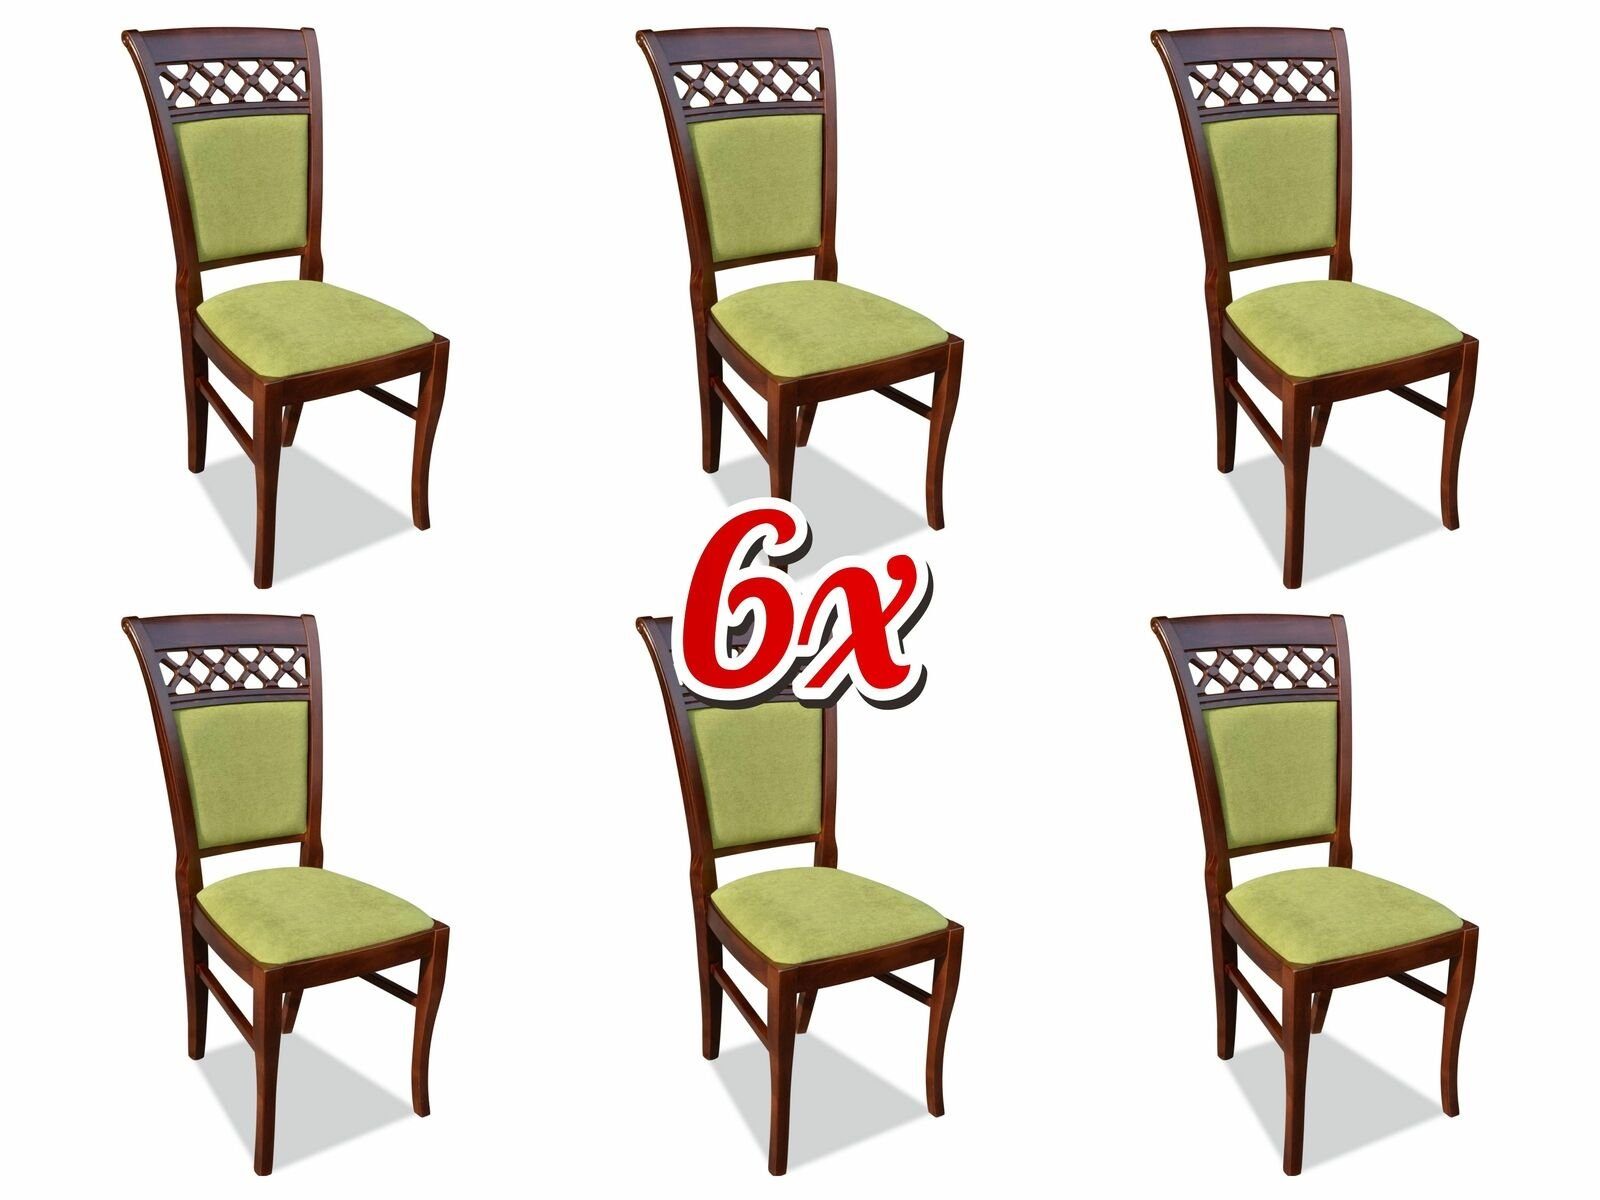 JVmoebel Stuhl, Esszimmer Stuhl Sessel Set Holz Stühle 6x Gruppen Textil Stühle Polster Design